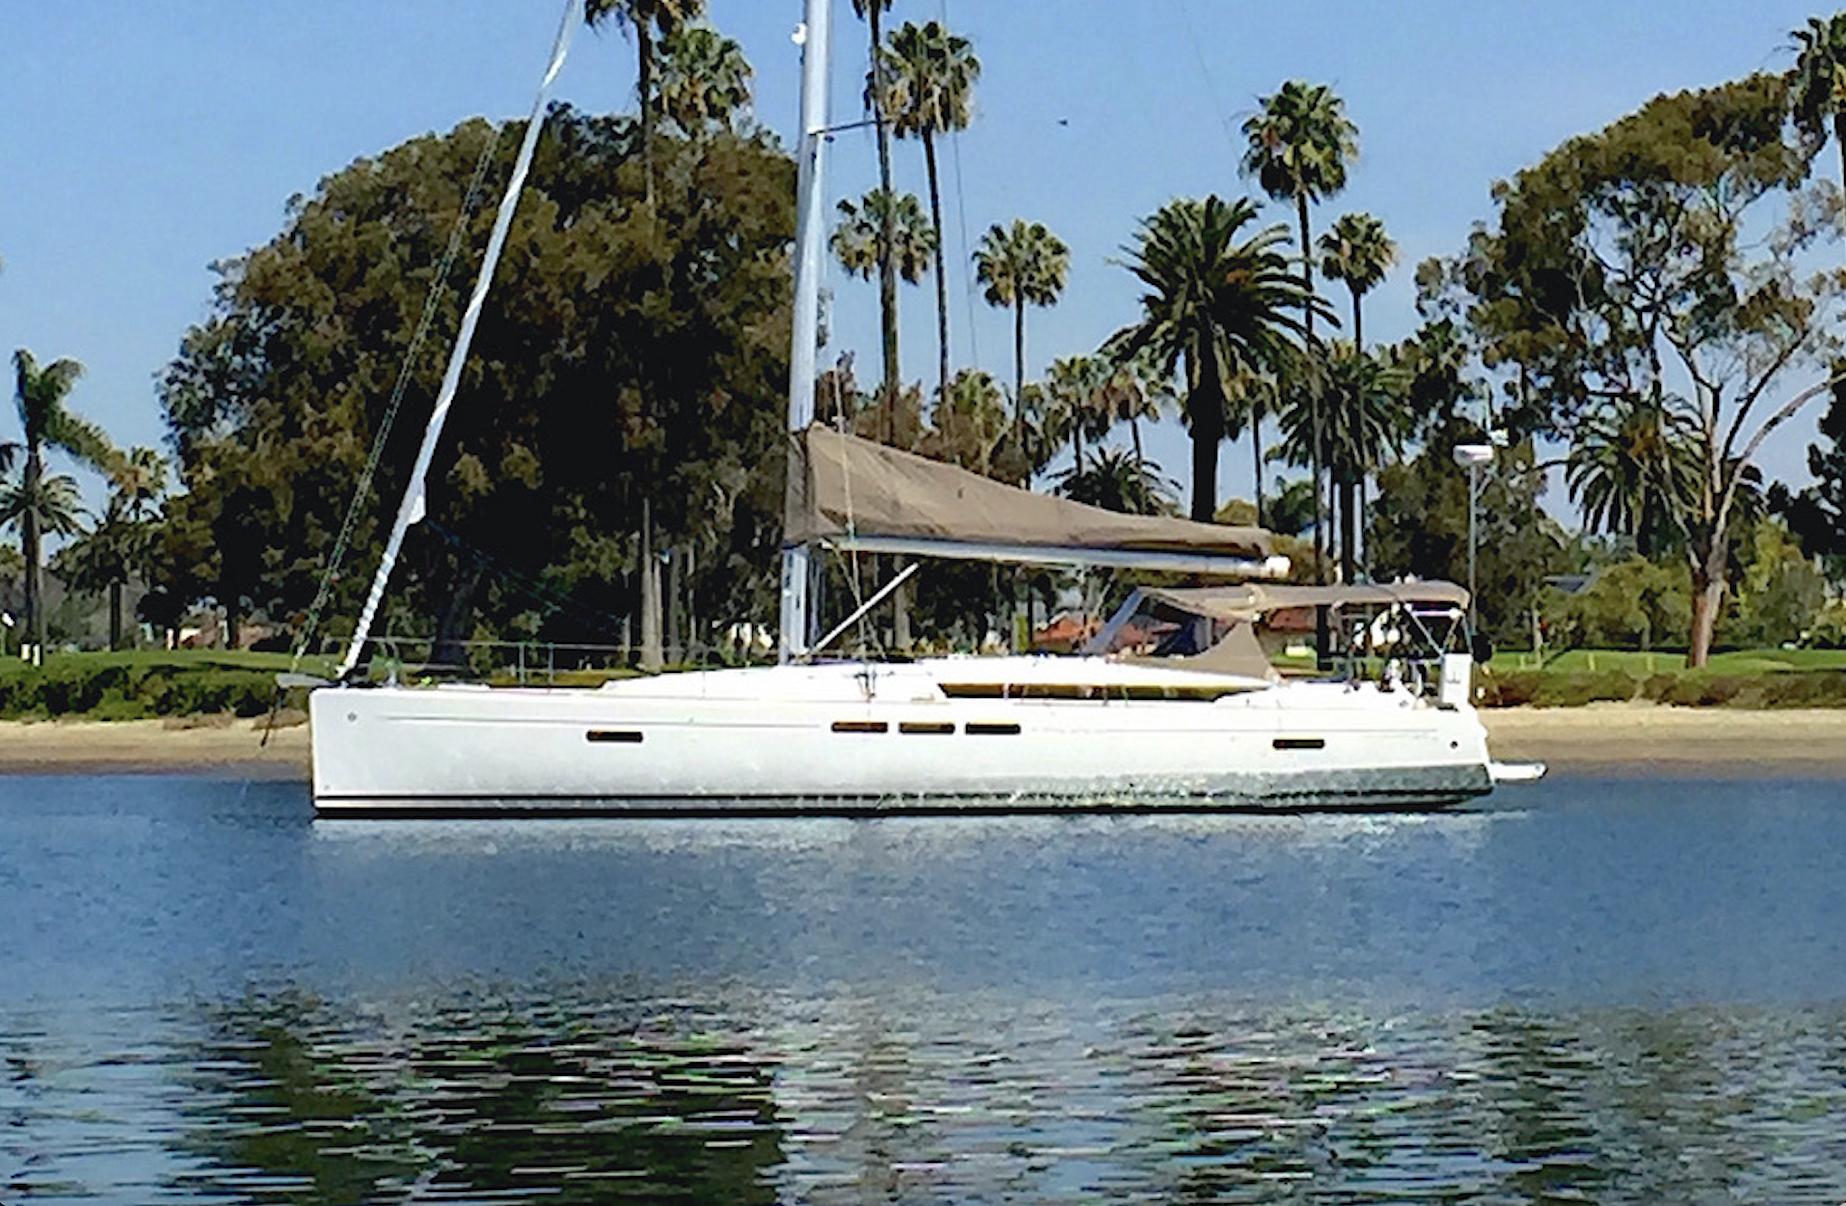 50′ Jeanneau 2015 Yacht for Sale